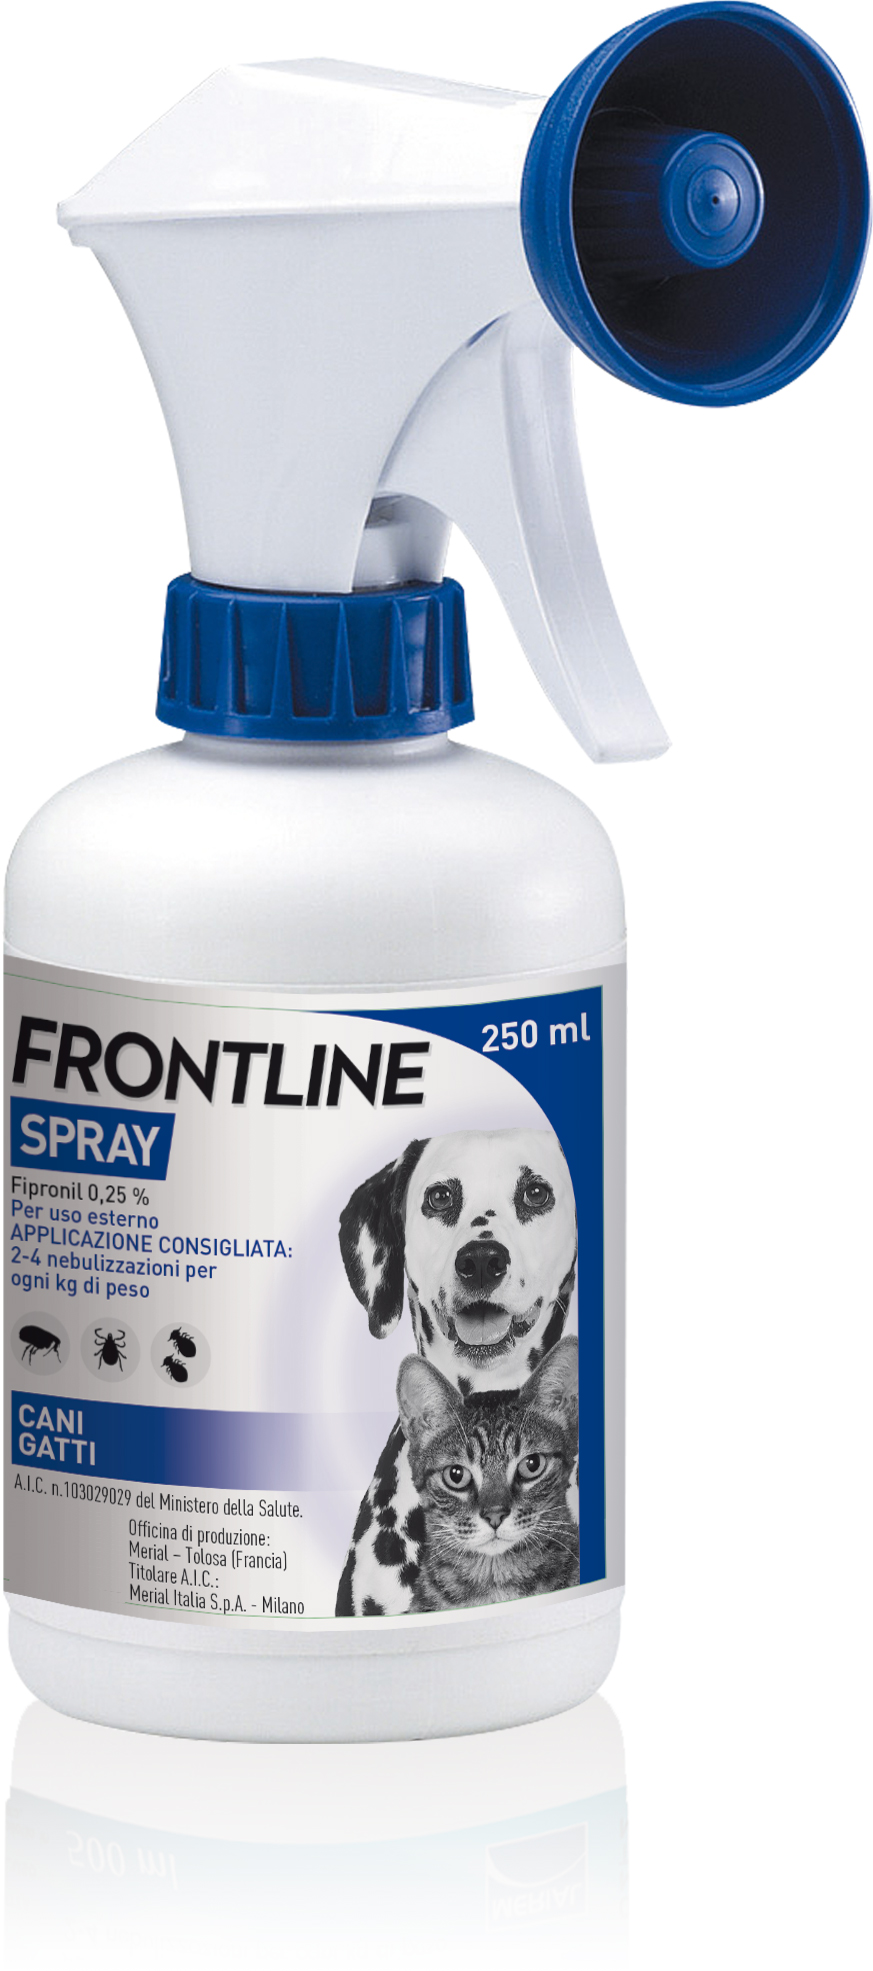 ATI Vet Flee Spray  Antiparassitario per cani e gatti –